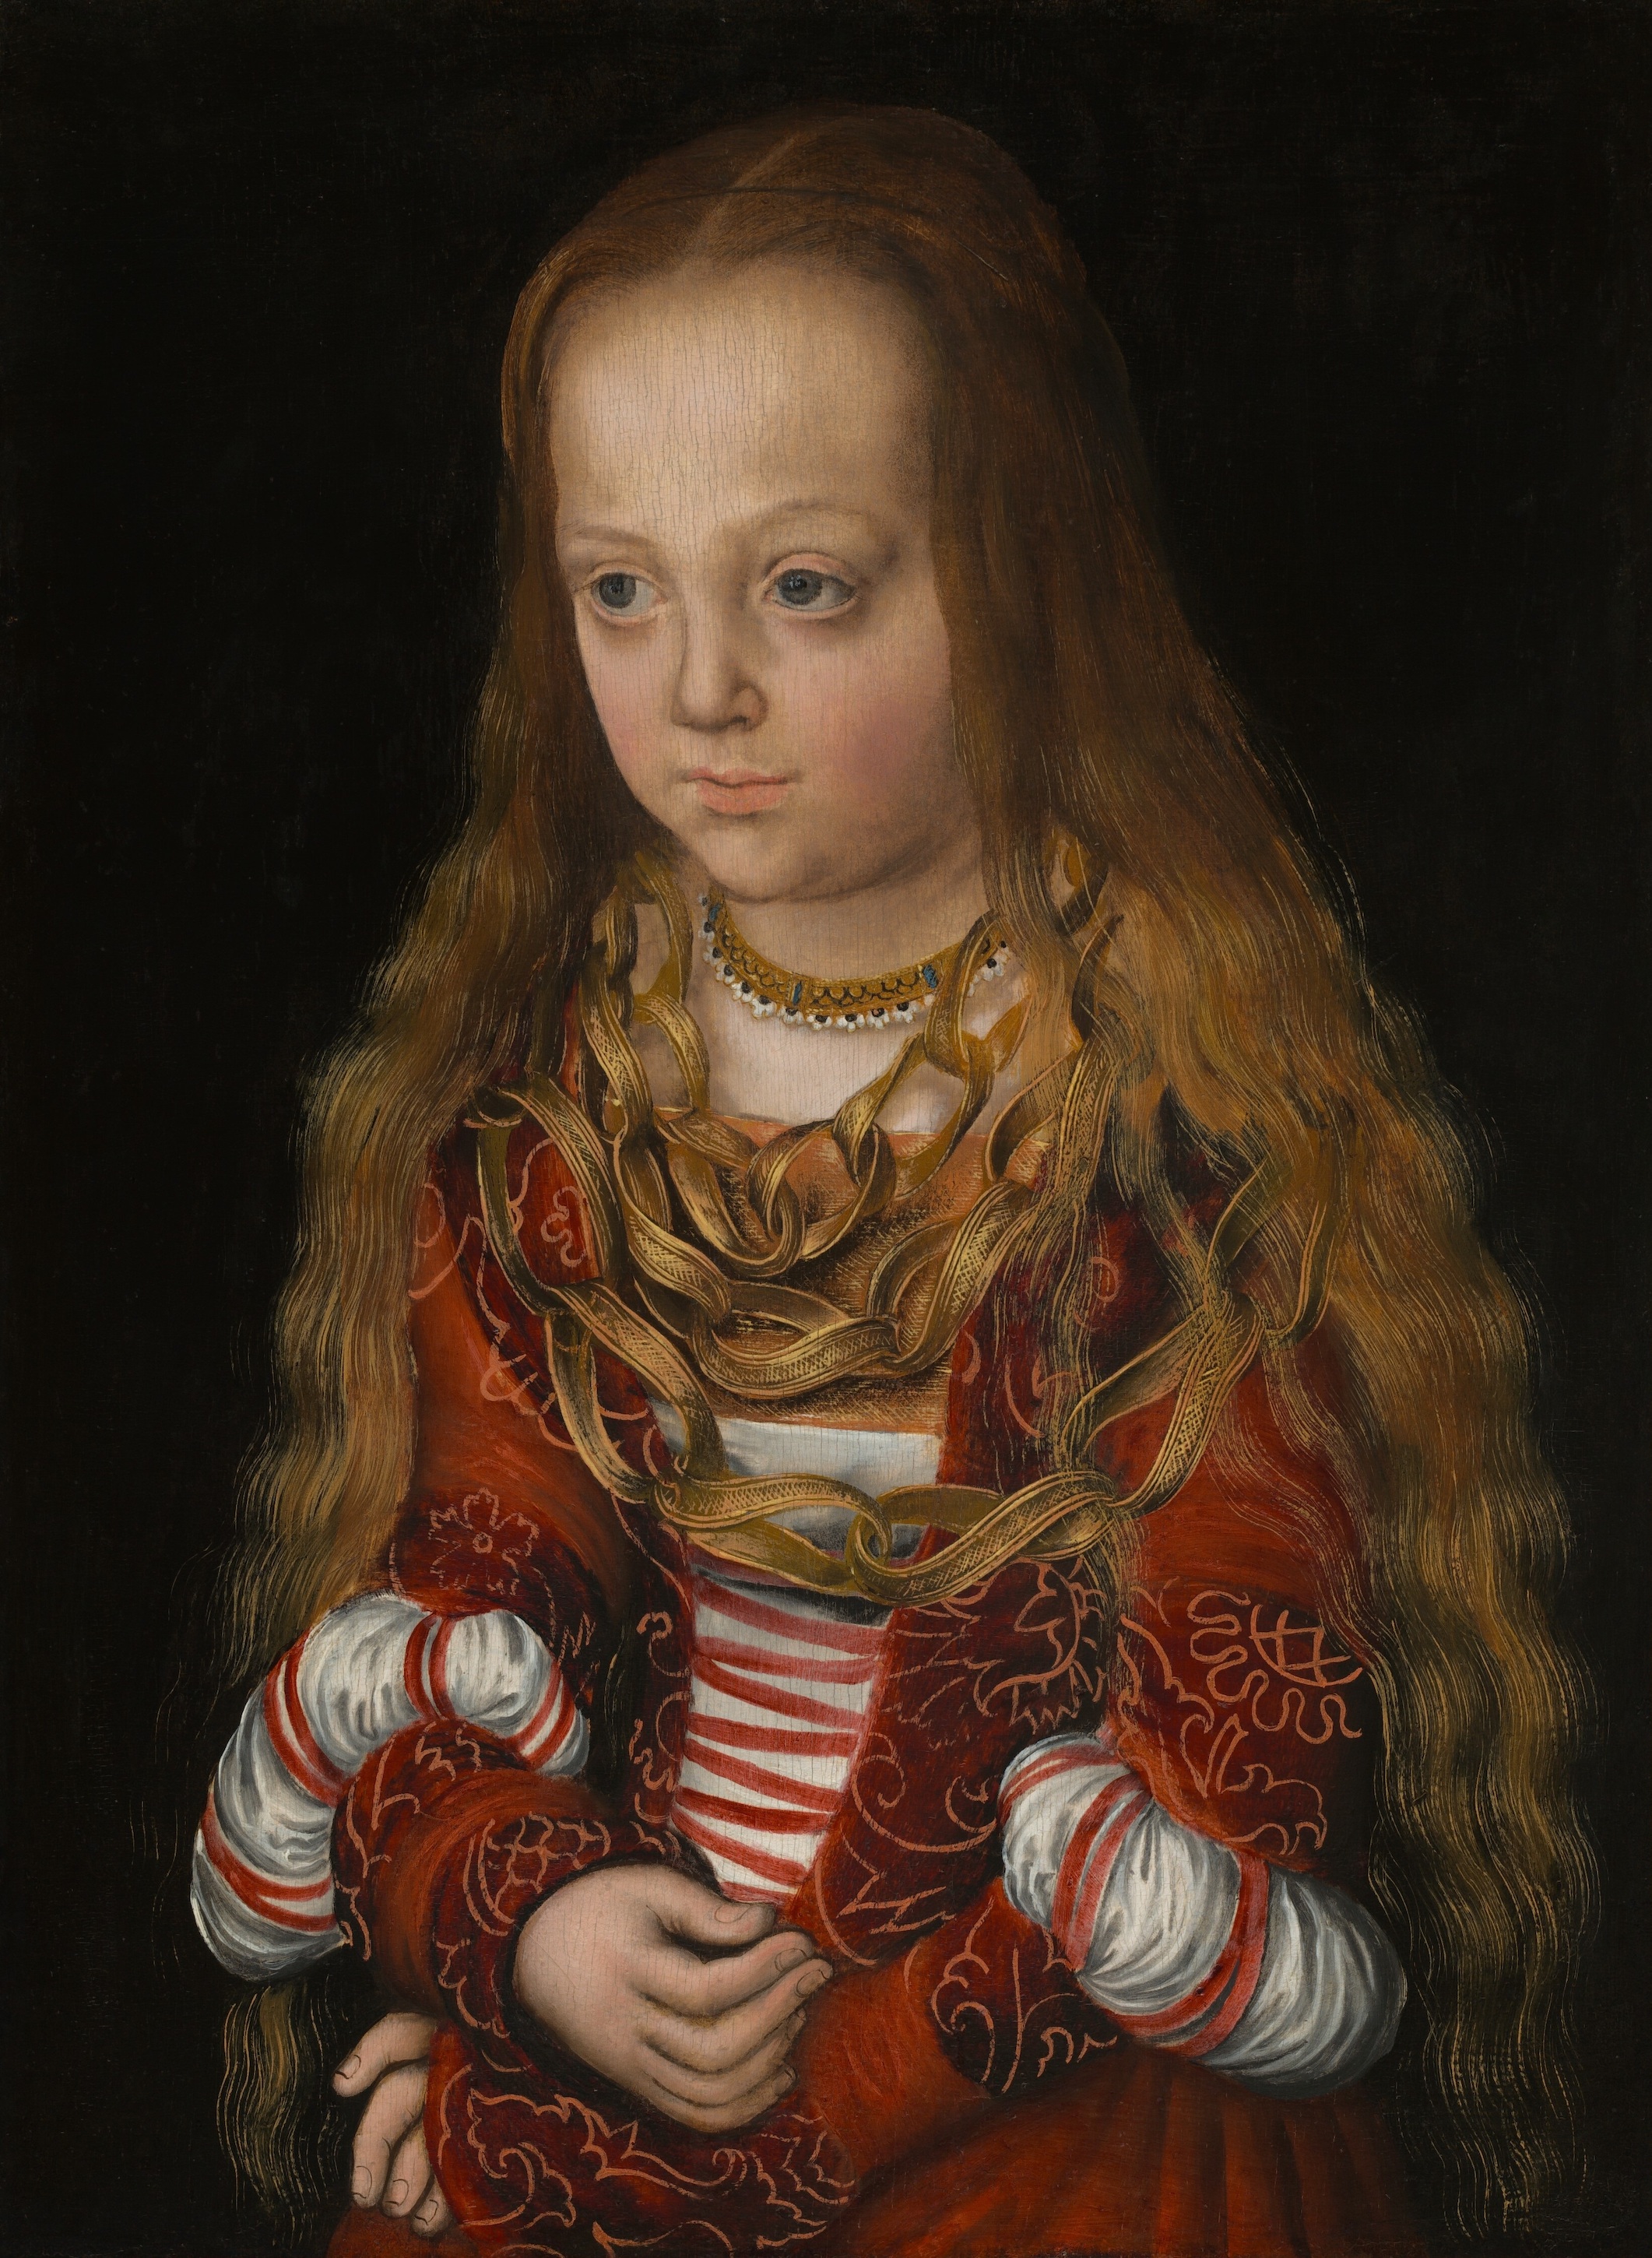 撒克森公主 by 老卢卡斯· 克拉纳赫 - c. 1517 - 43.4 x 34.3 cm 